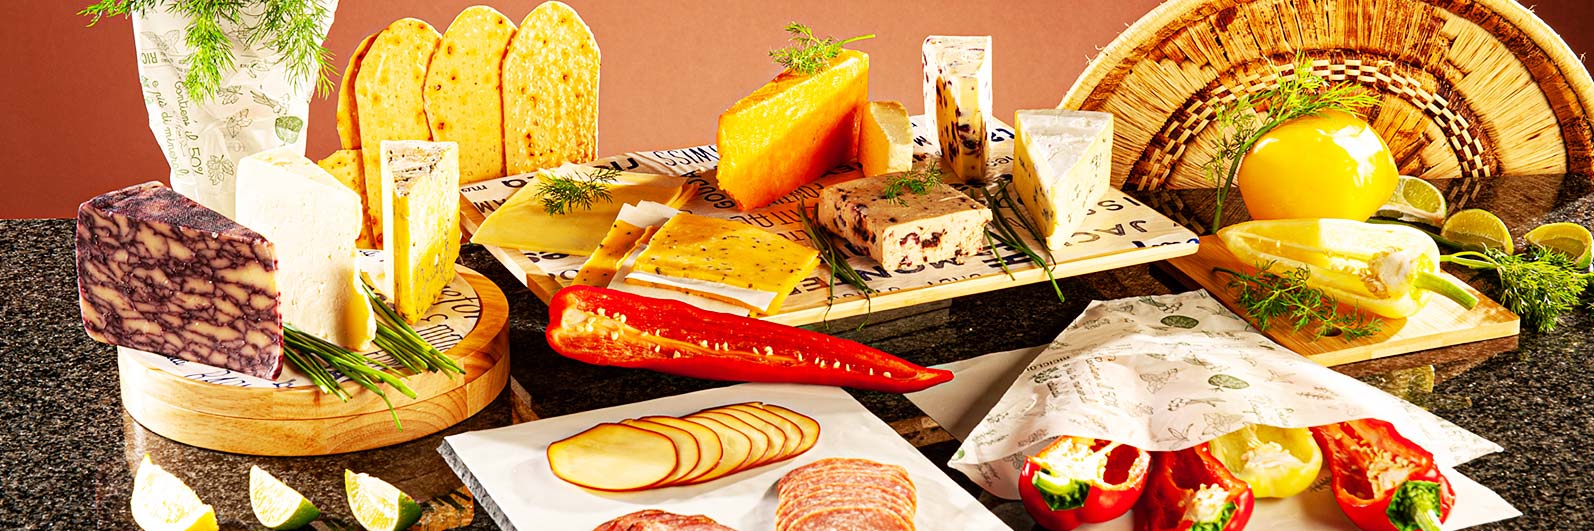 Suppliers of Bespoke Custom Food Packaging Solutions